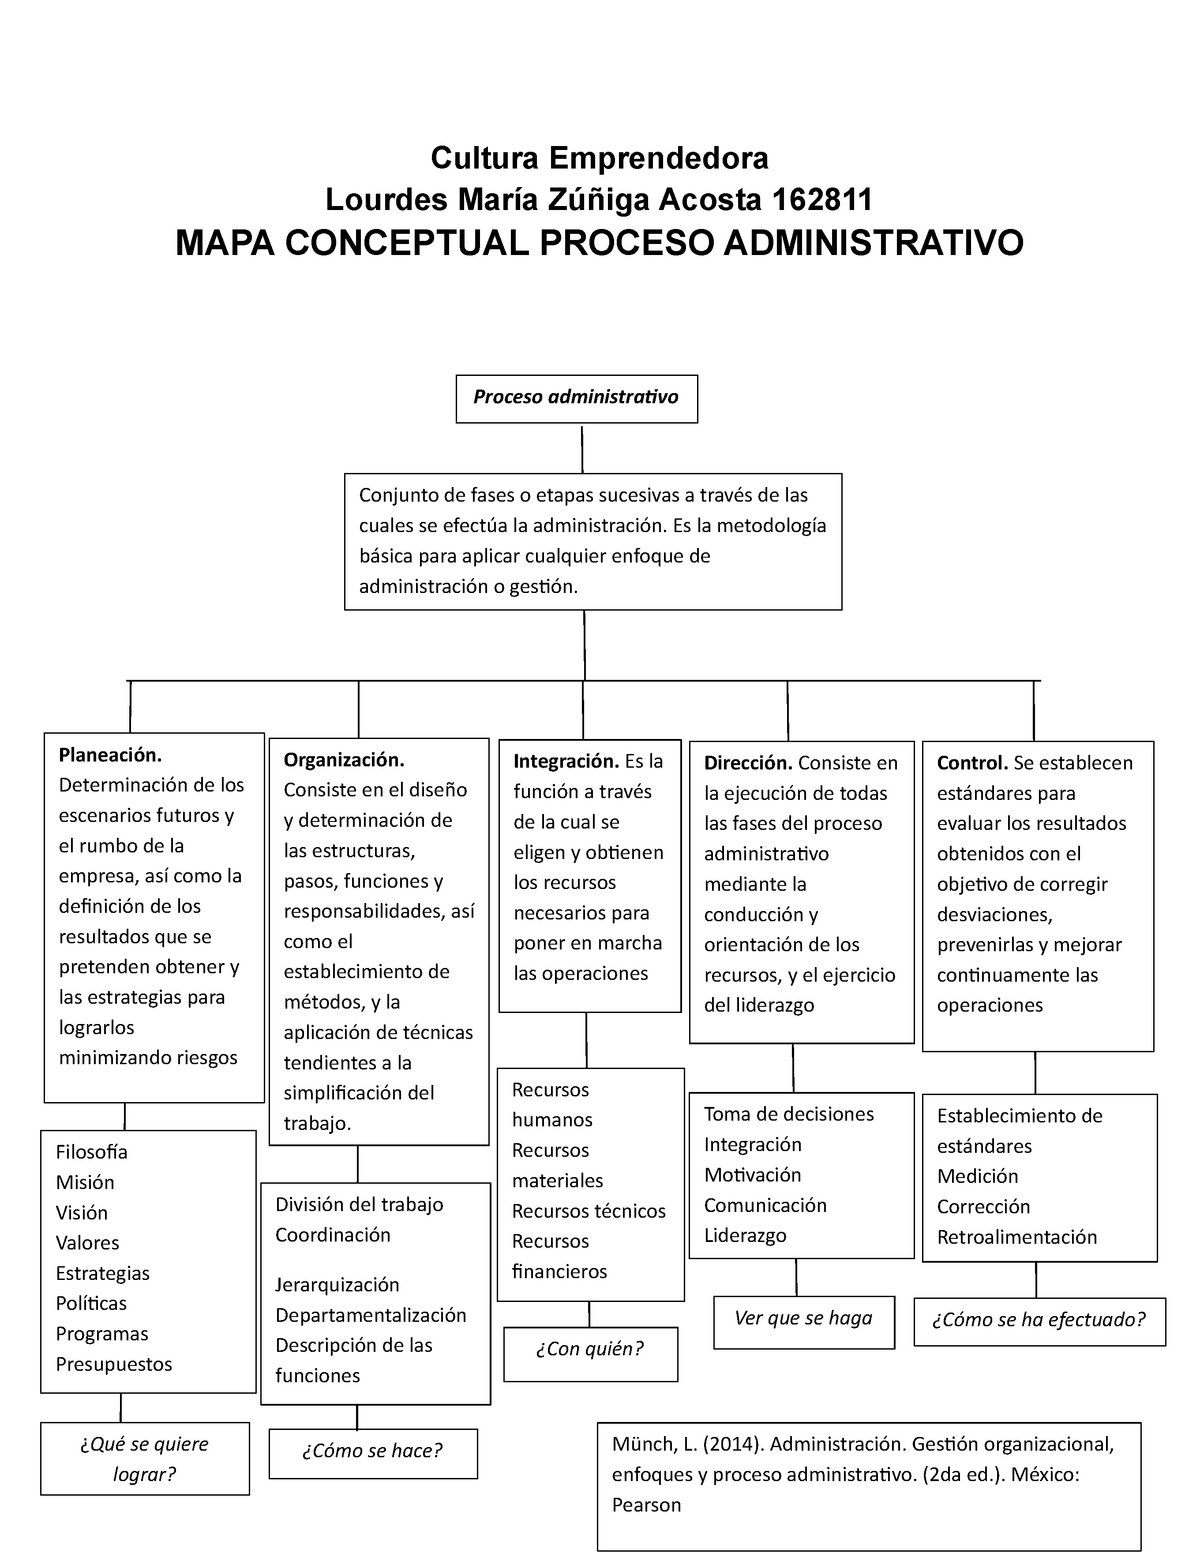 AI20 Mapa conceptual sobre Proceso Administrativo Lourdes Zuñiga Acosta  162811 - Cultura - Studocu